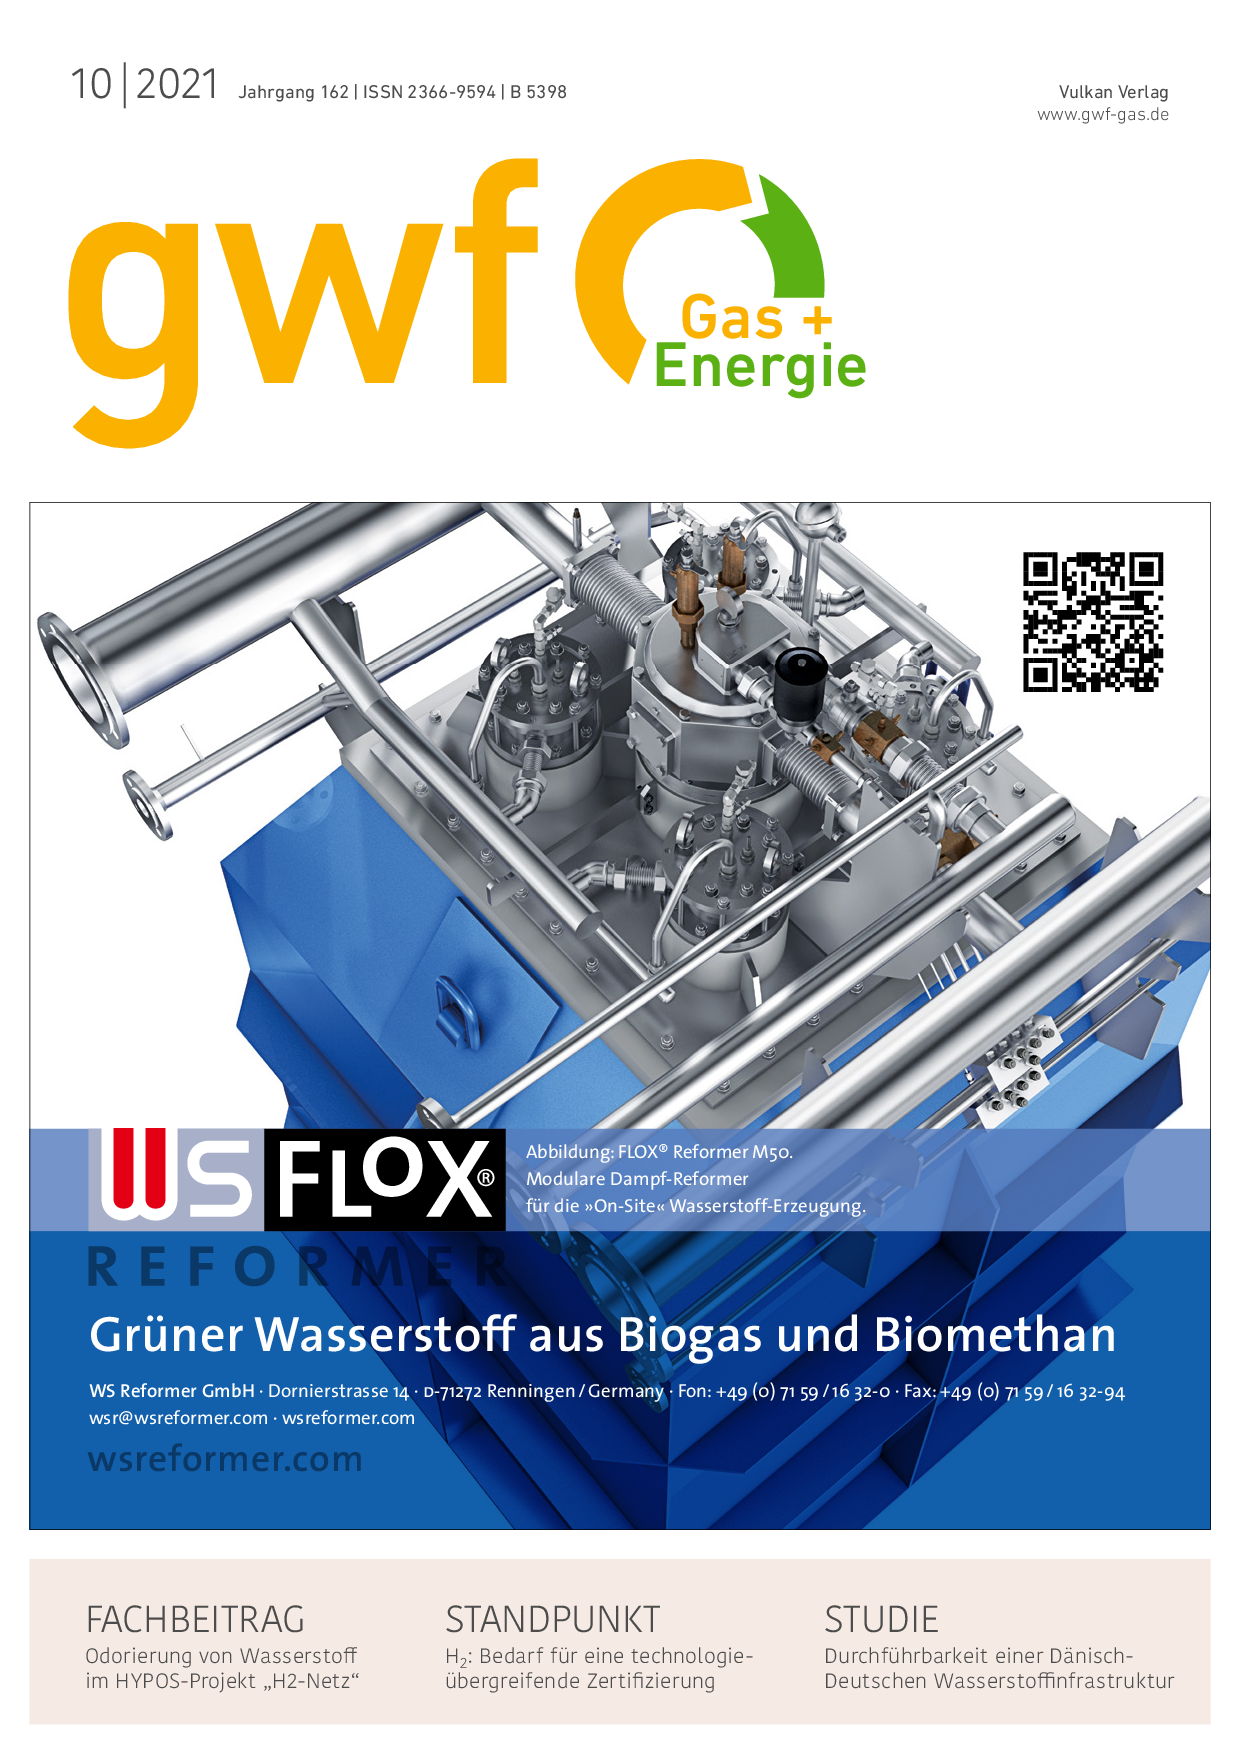 gwf Gas+Energie - 10 2021